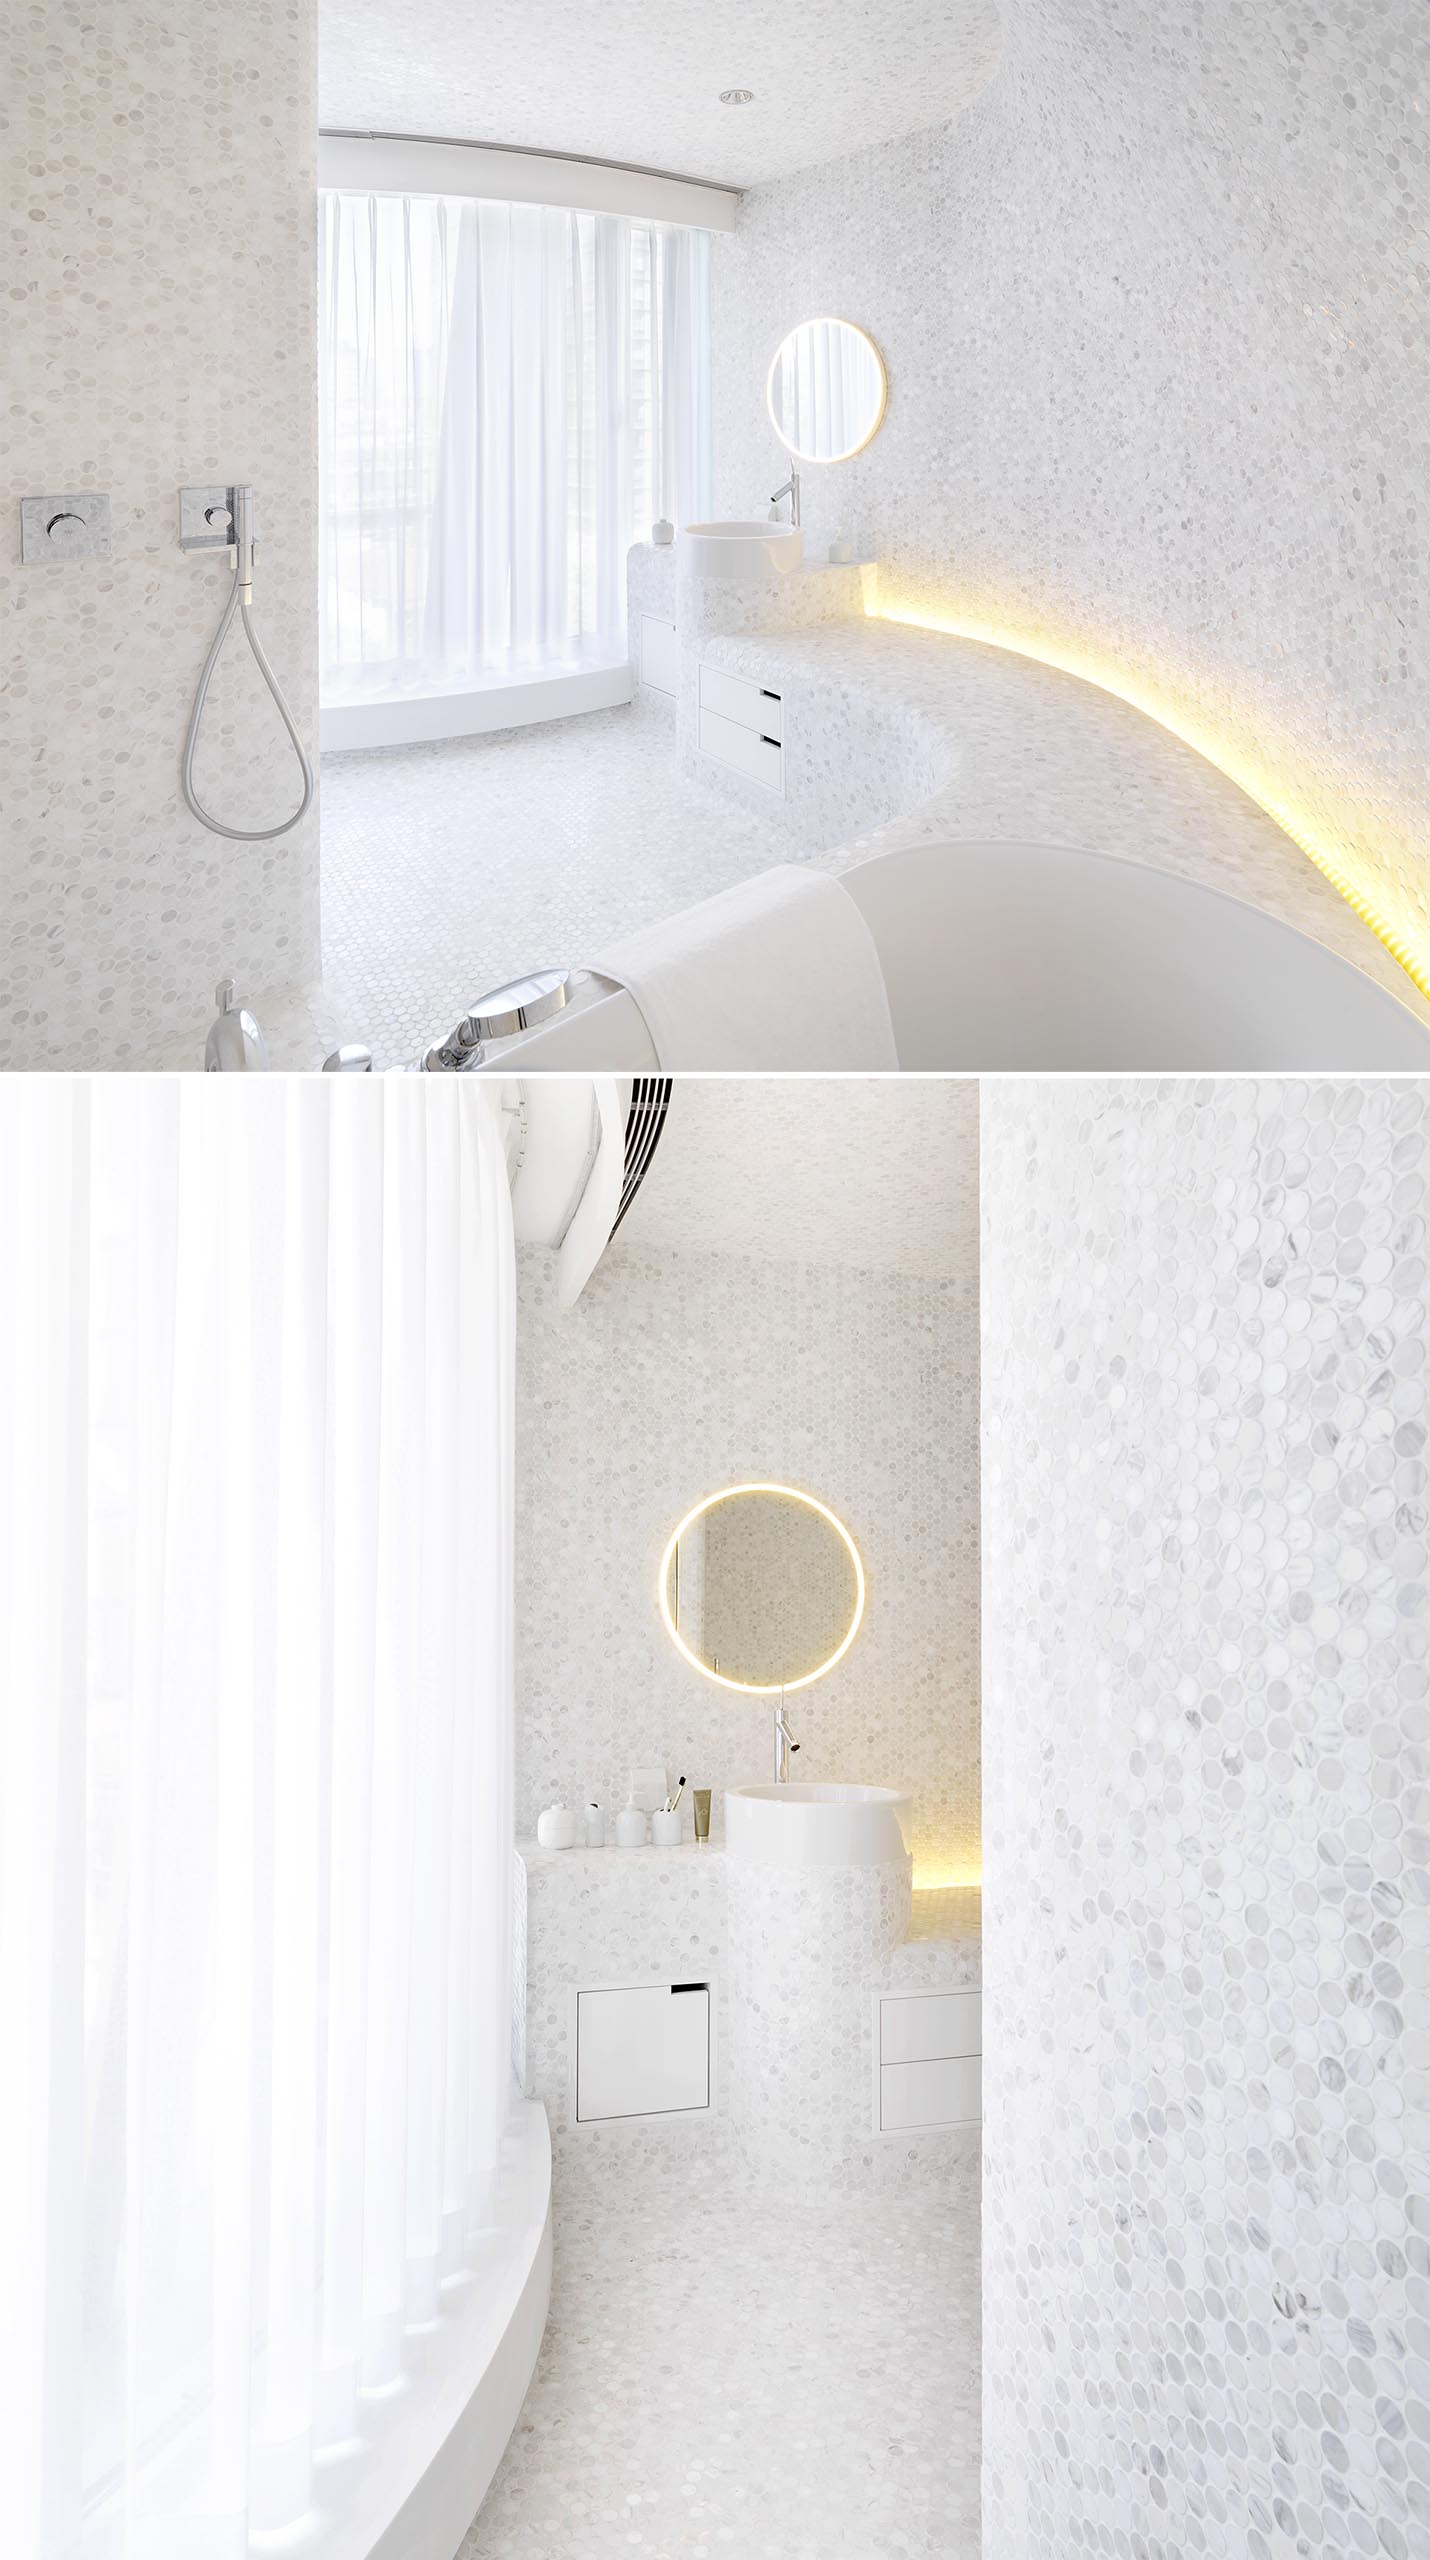 Современная белая ванная комната с пенни плиткой, скрытым освещением и изогнутыми встроенными элементами.